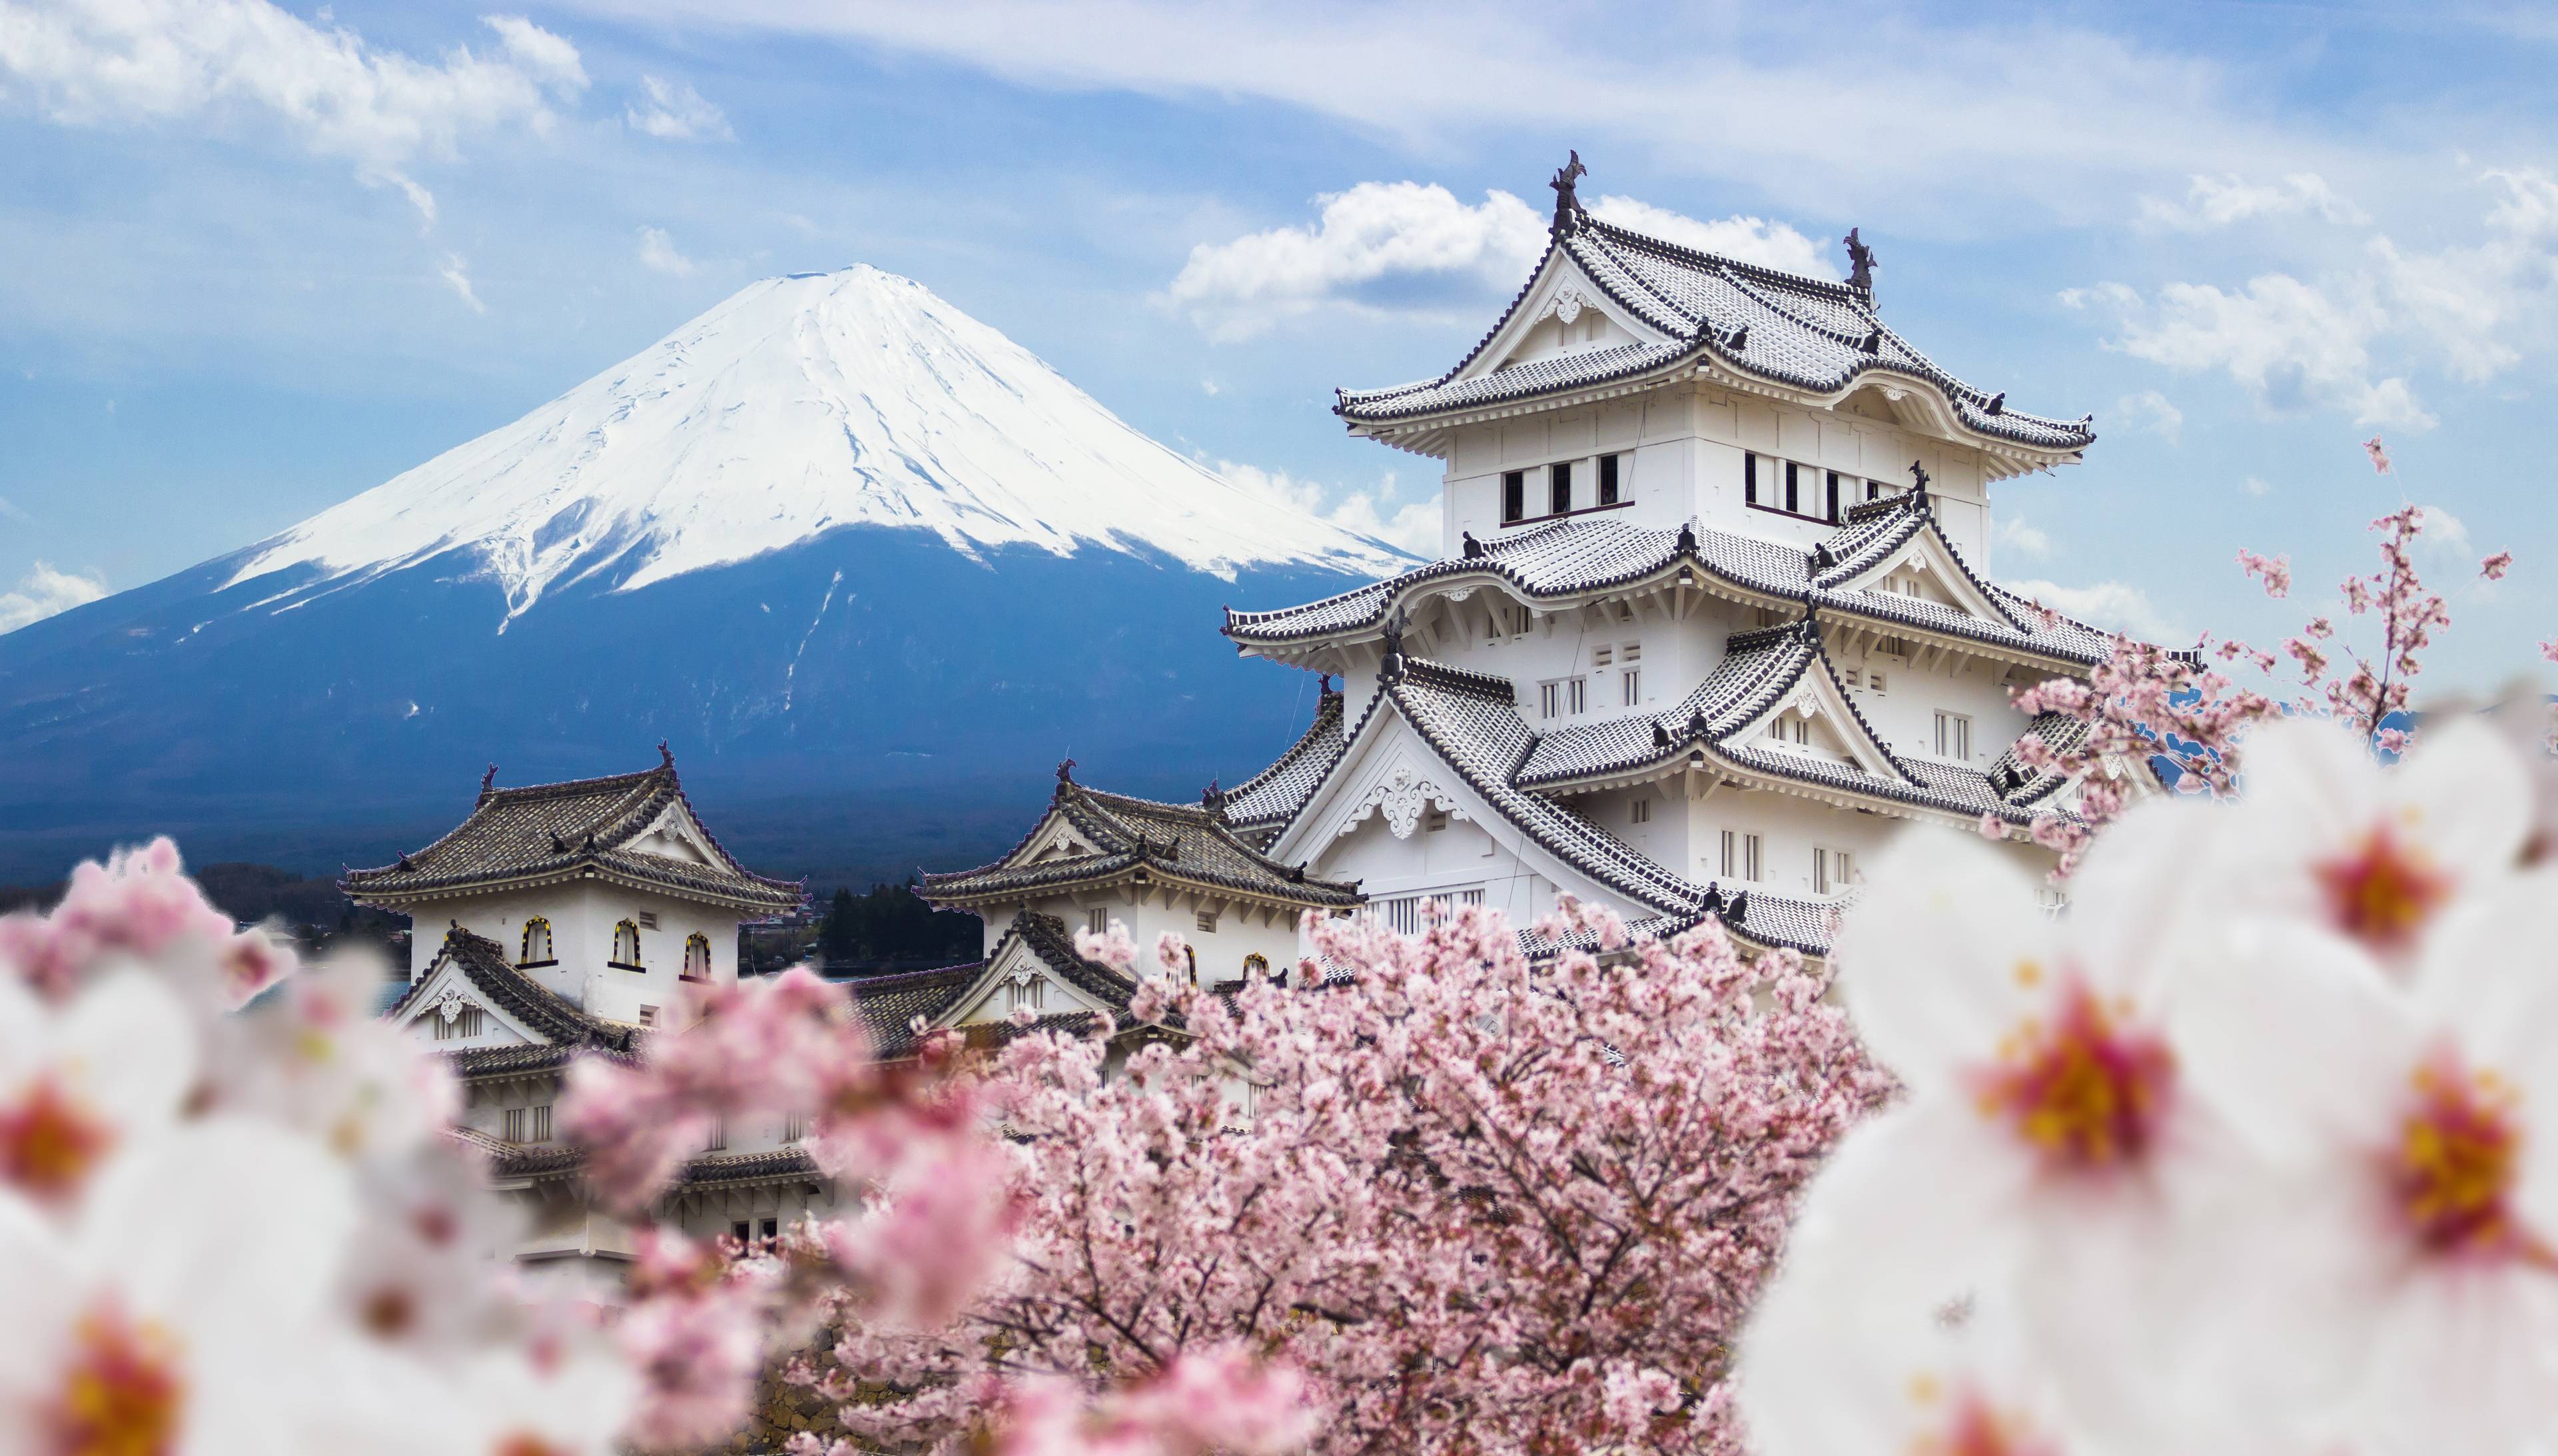 castello con monte fuji sullo sfondo e fiori di ciliegio rosa